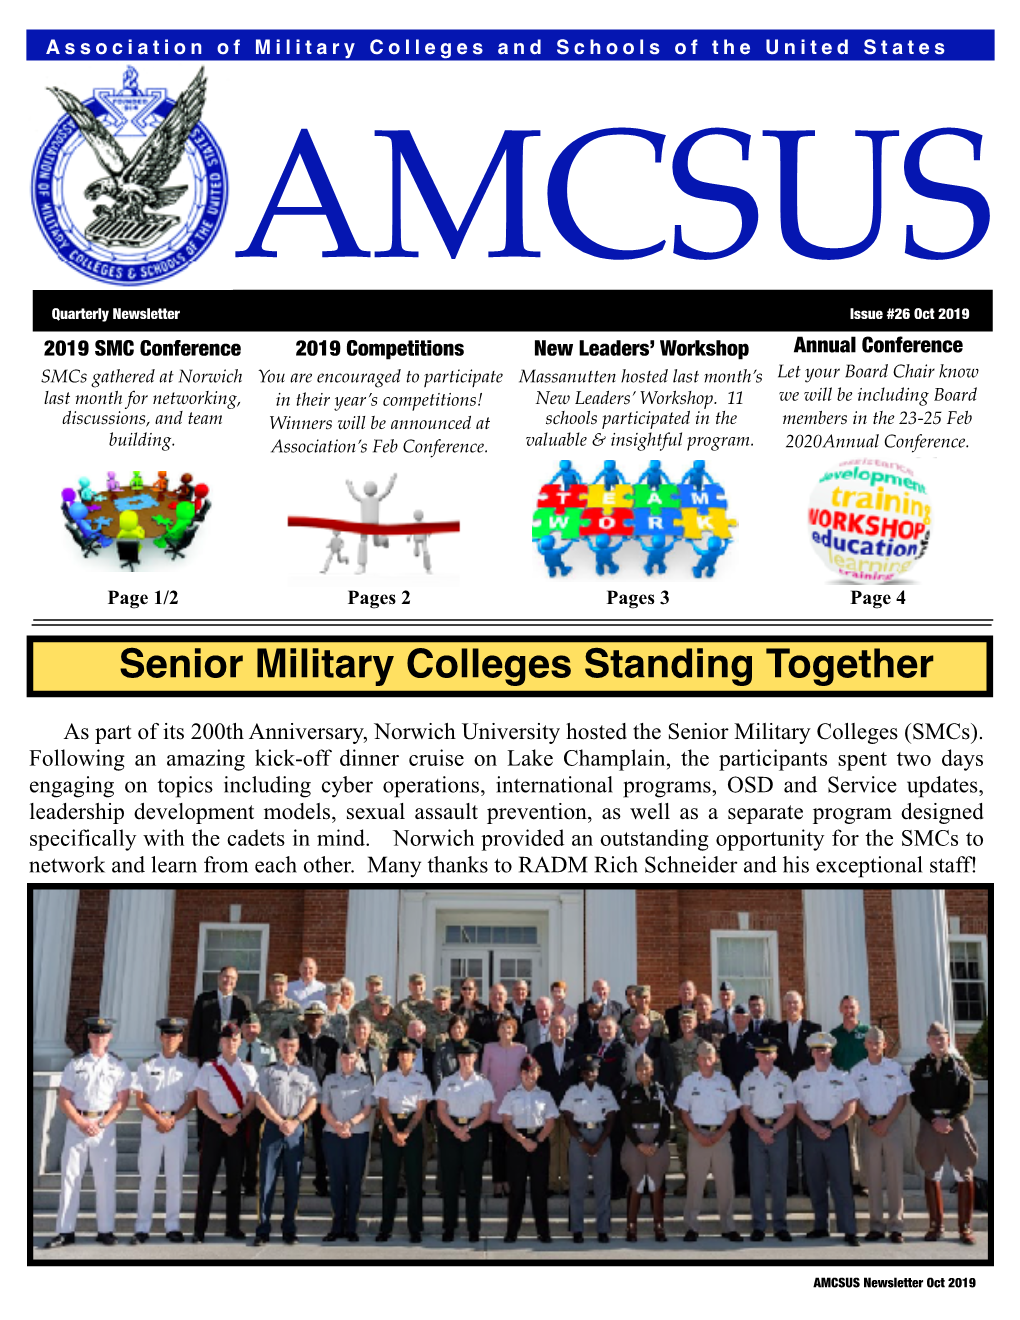 AMCSUS Issue 26